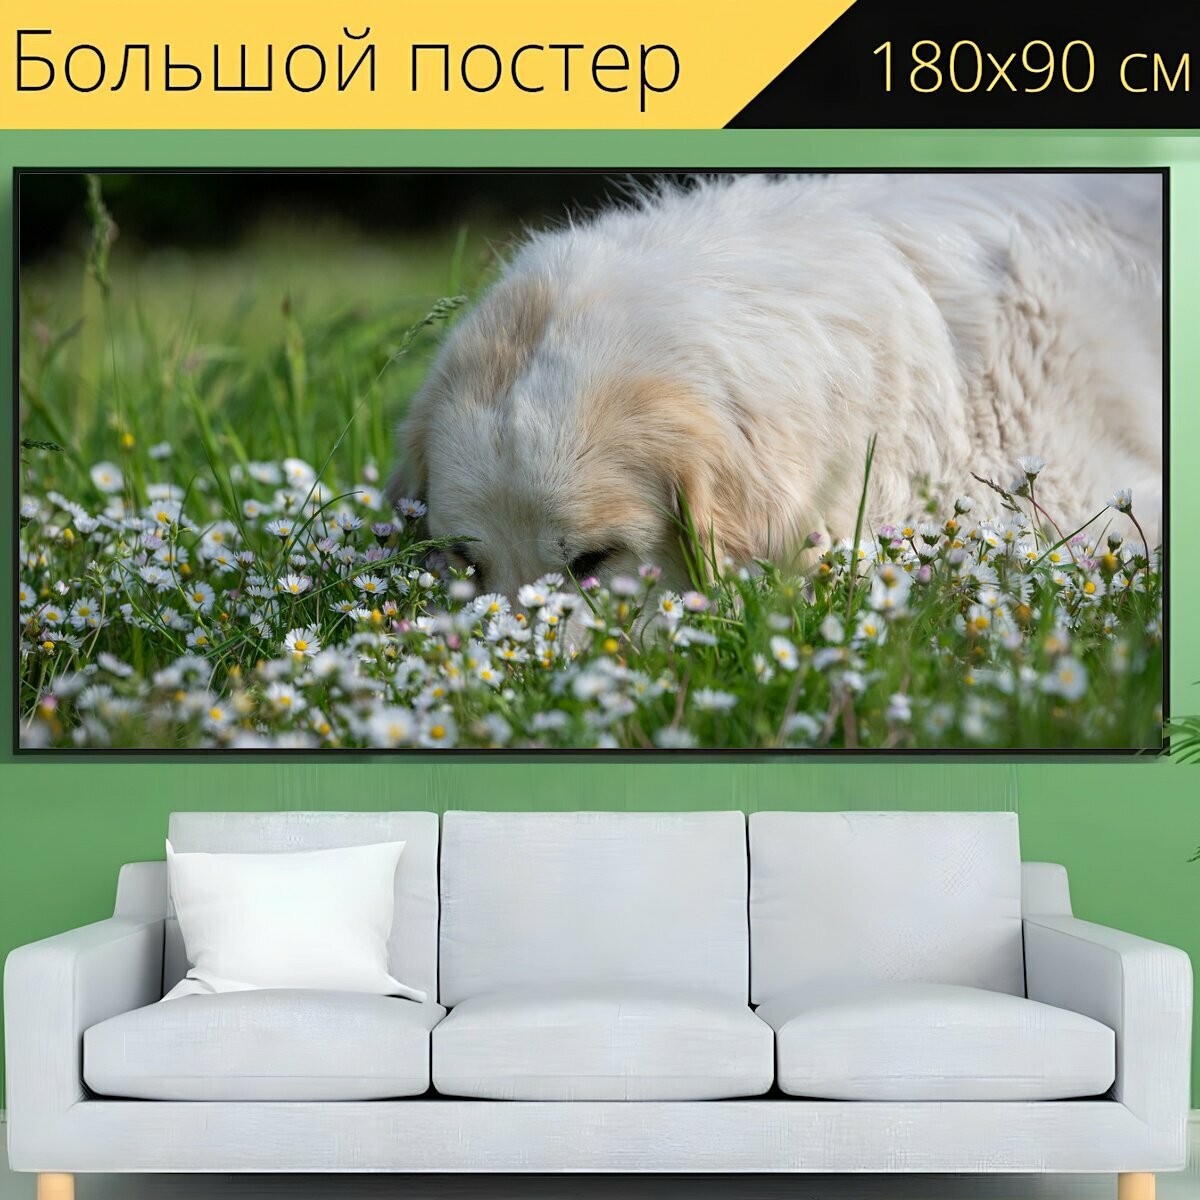 Большой постер "Собака, луг, цветочный луг" 180 x 90 см. для интерьера